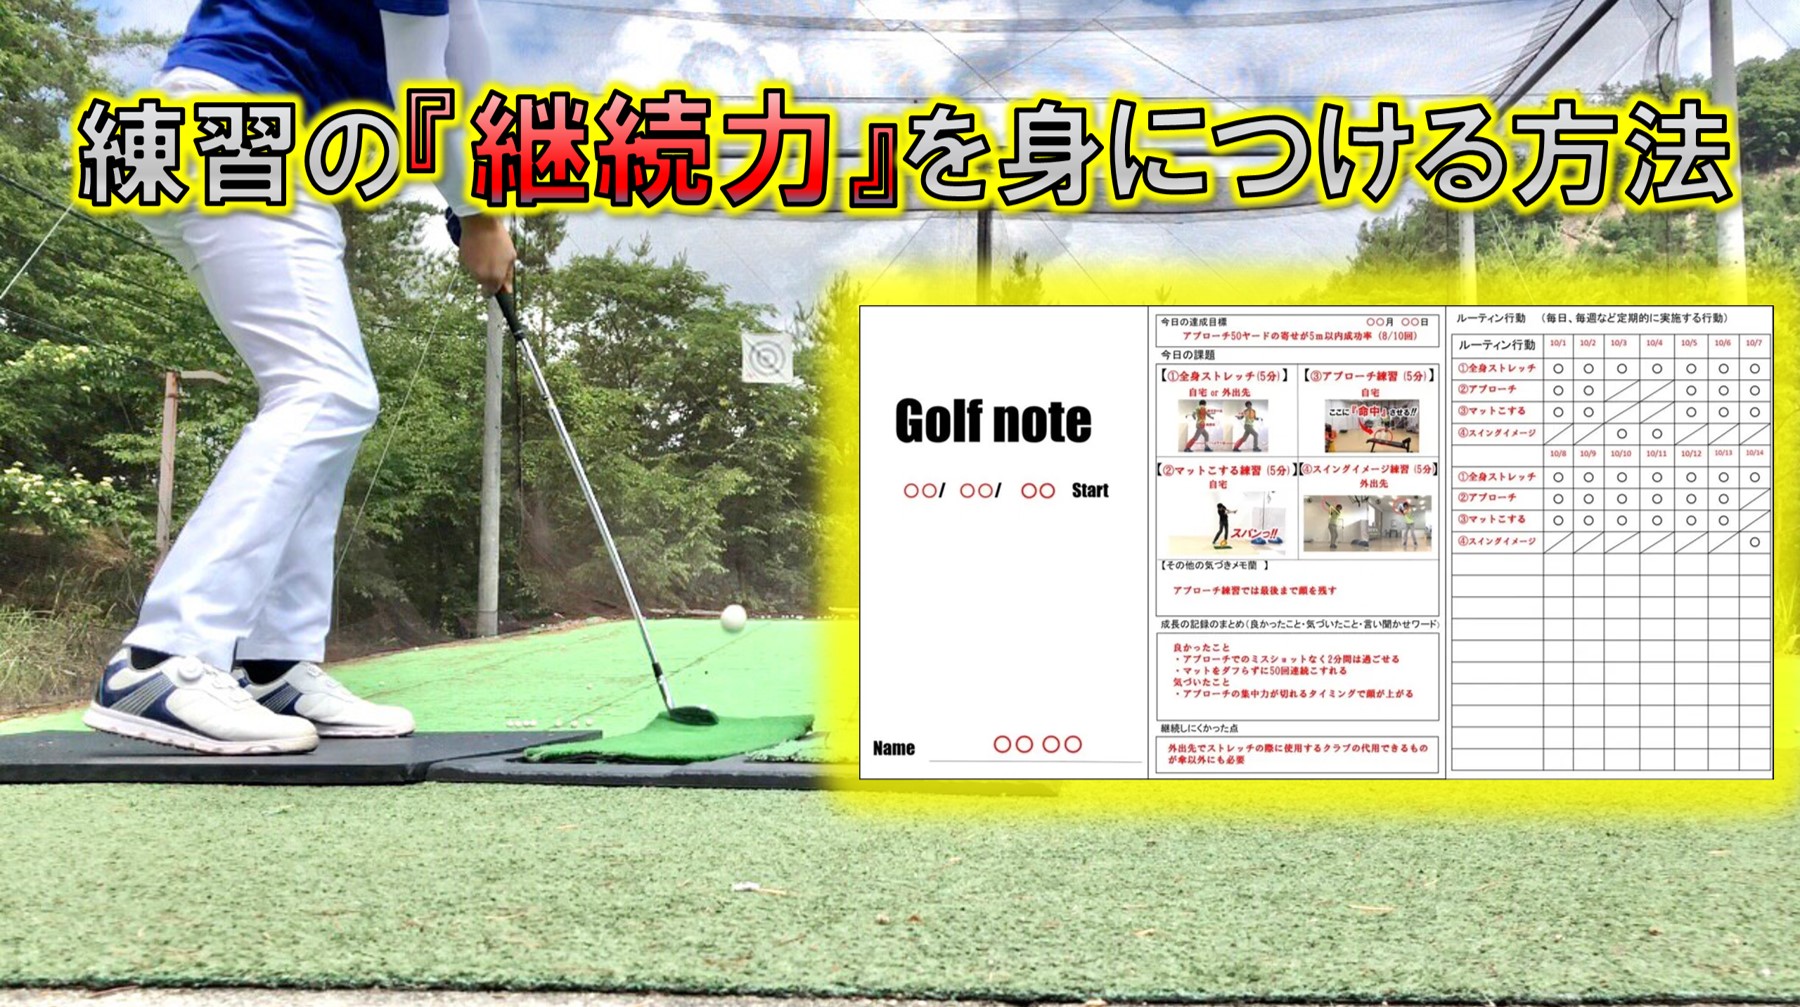 ゴルフの練習が簡単に『継続』できる方法